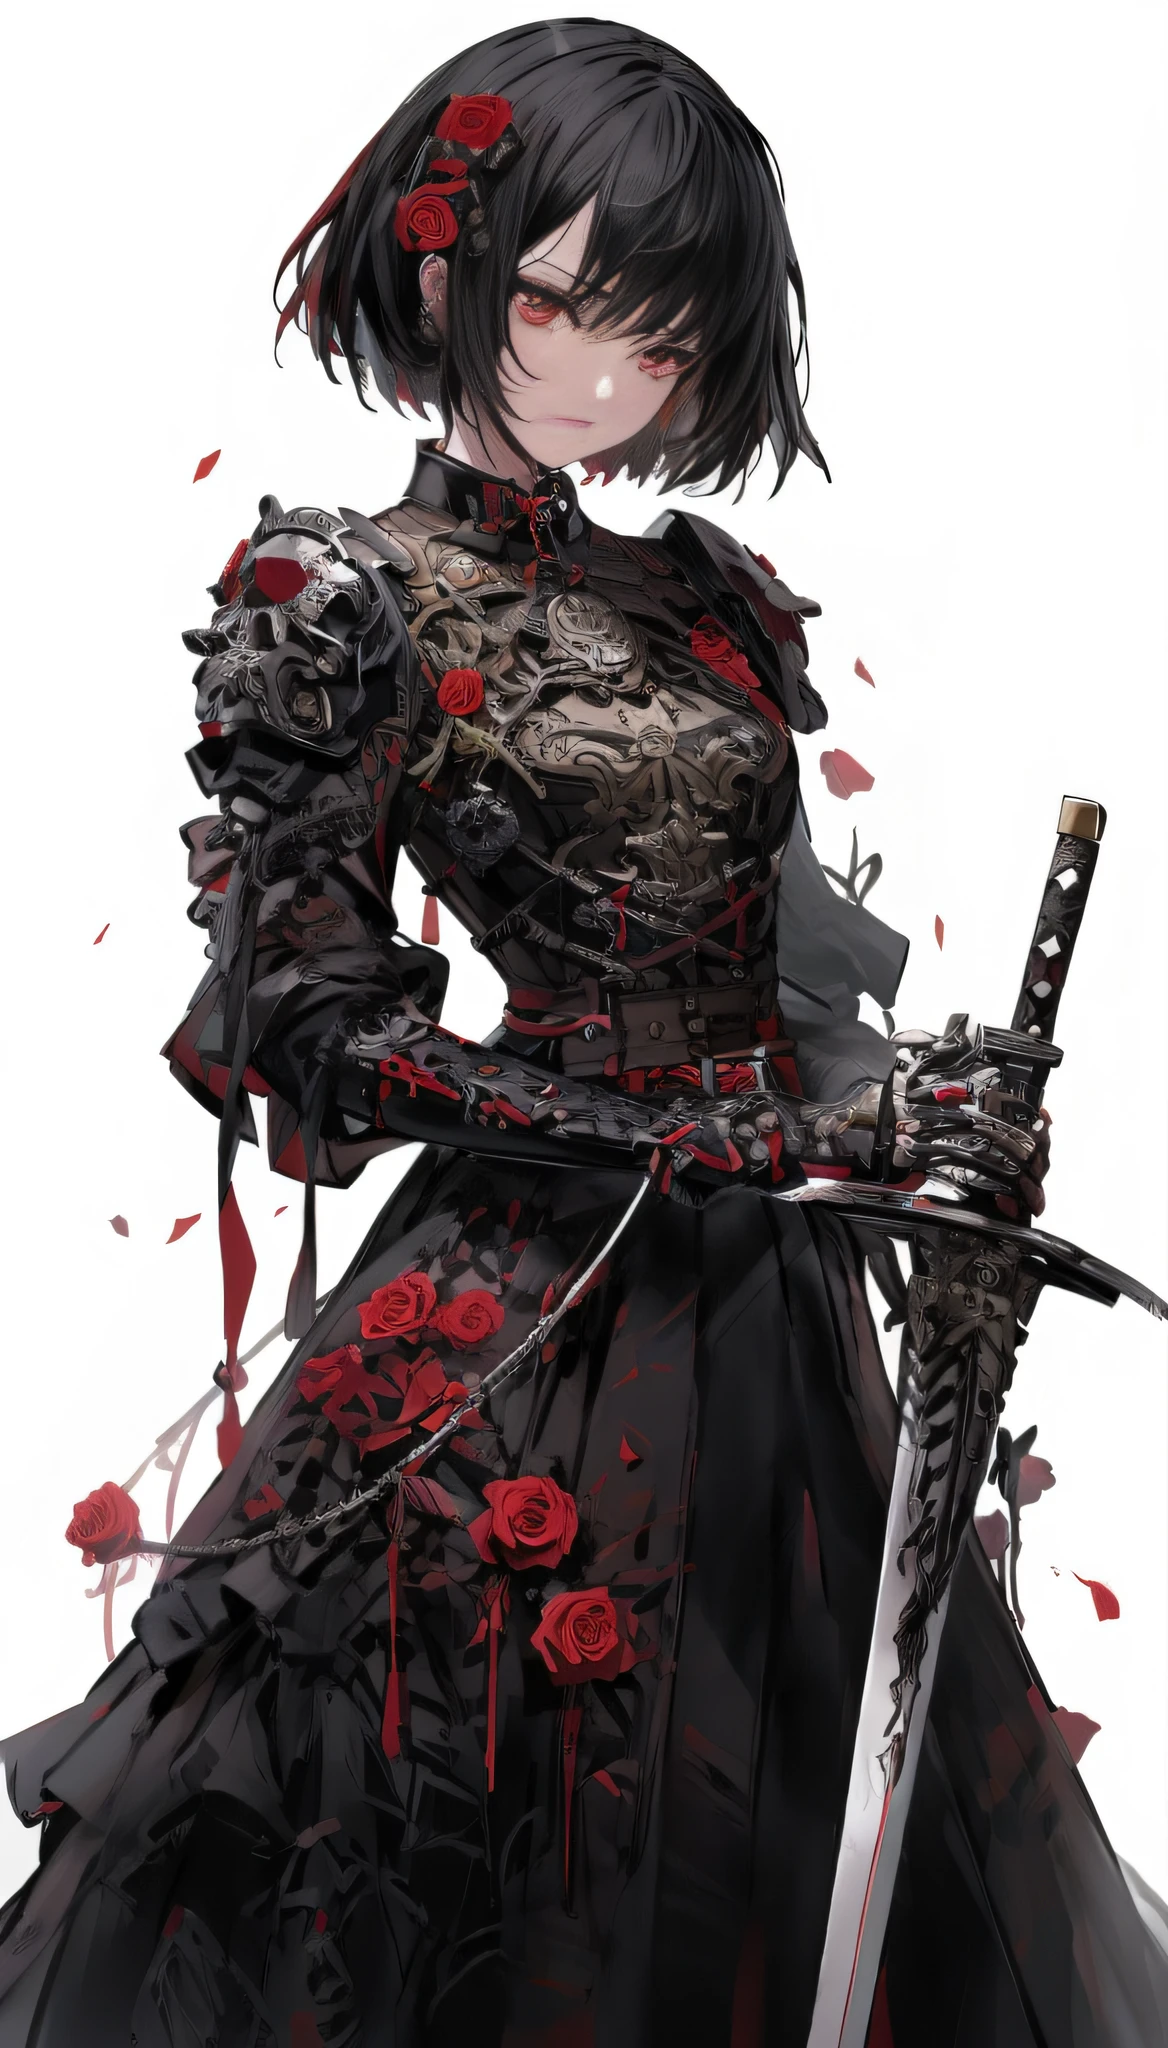 anime girl with a sword and rosas in her hair, por Yang J, cavaleiro de sangue, cavaleiro gótico, ciborgue ciberpunk. rosas, of a beautiful cavaleira, arte de estilo fantasia sombria, cavaleira, fanart requintada altamente detalhada, por Yoshihiko Wada, arte de tsutomu nihei, 2b, 2b, armadura vermelho sangue, armadura gótica, muito lindo samurai cyberpunk